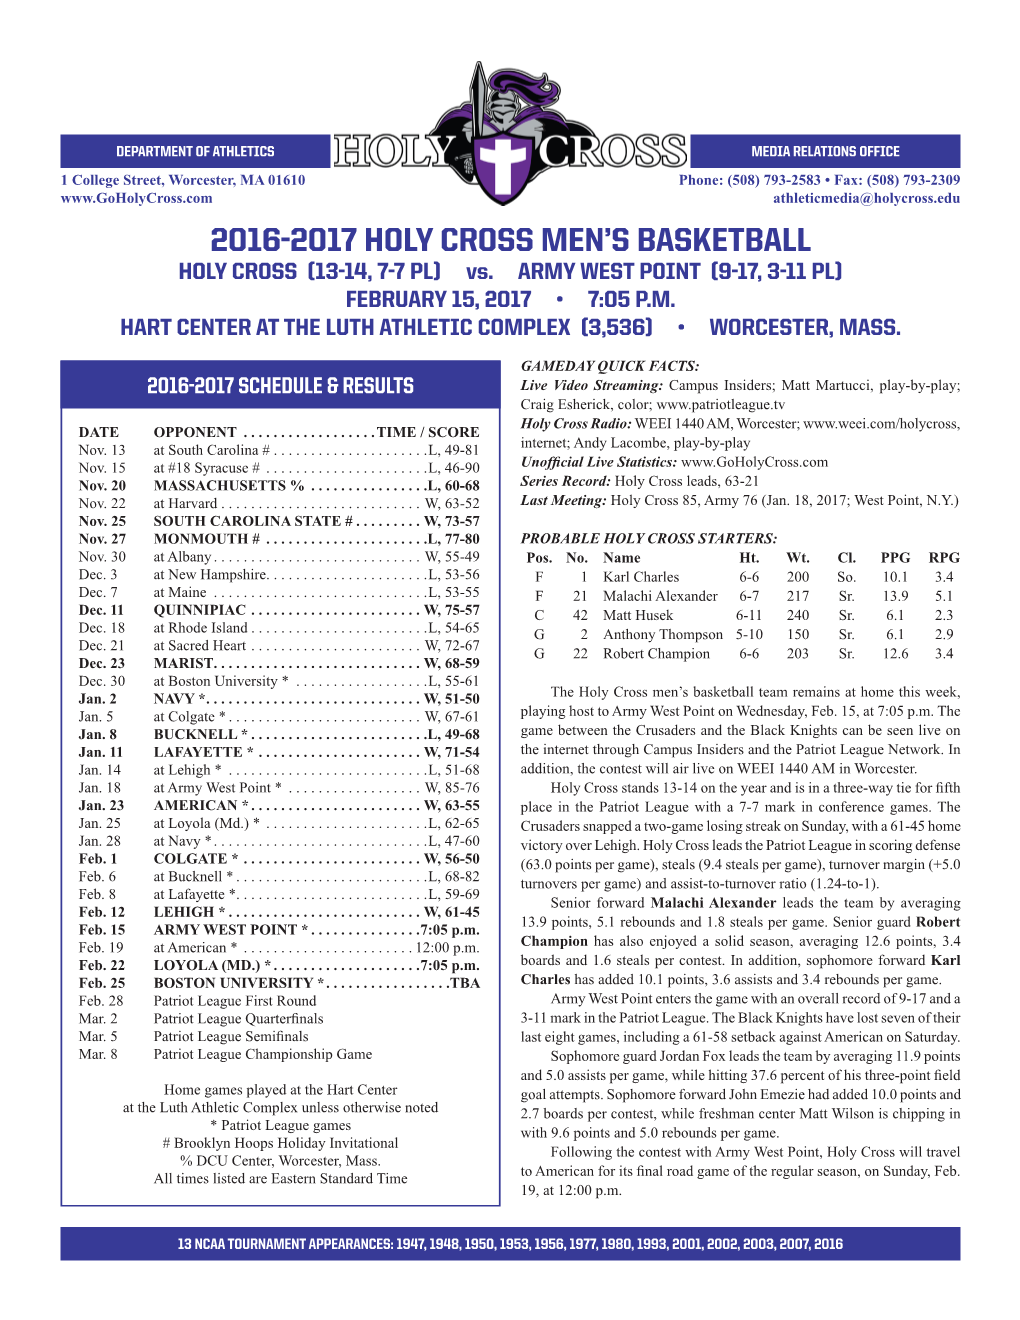 2016-2017 Holy Cross Men's Basketball